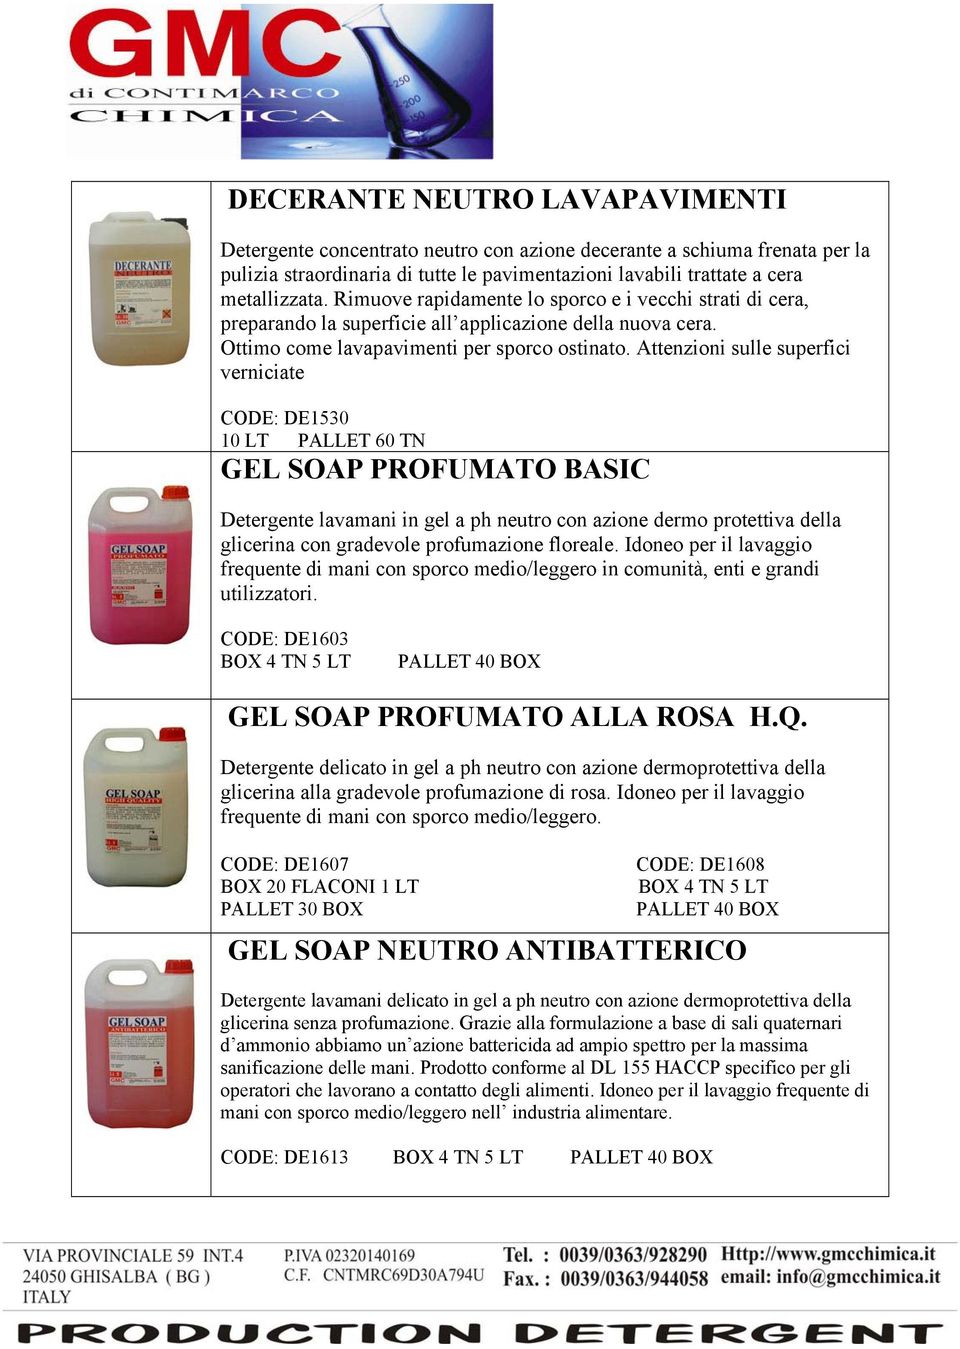 Attenzioni sulle superfici verniciate CODE: DE1530 GEL SOAP PROFUMATO BASIC Detergente lavamani in gel a ph neutro con azione dermo protettiva della glicerina con gradevole profumazione floreale.